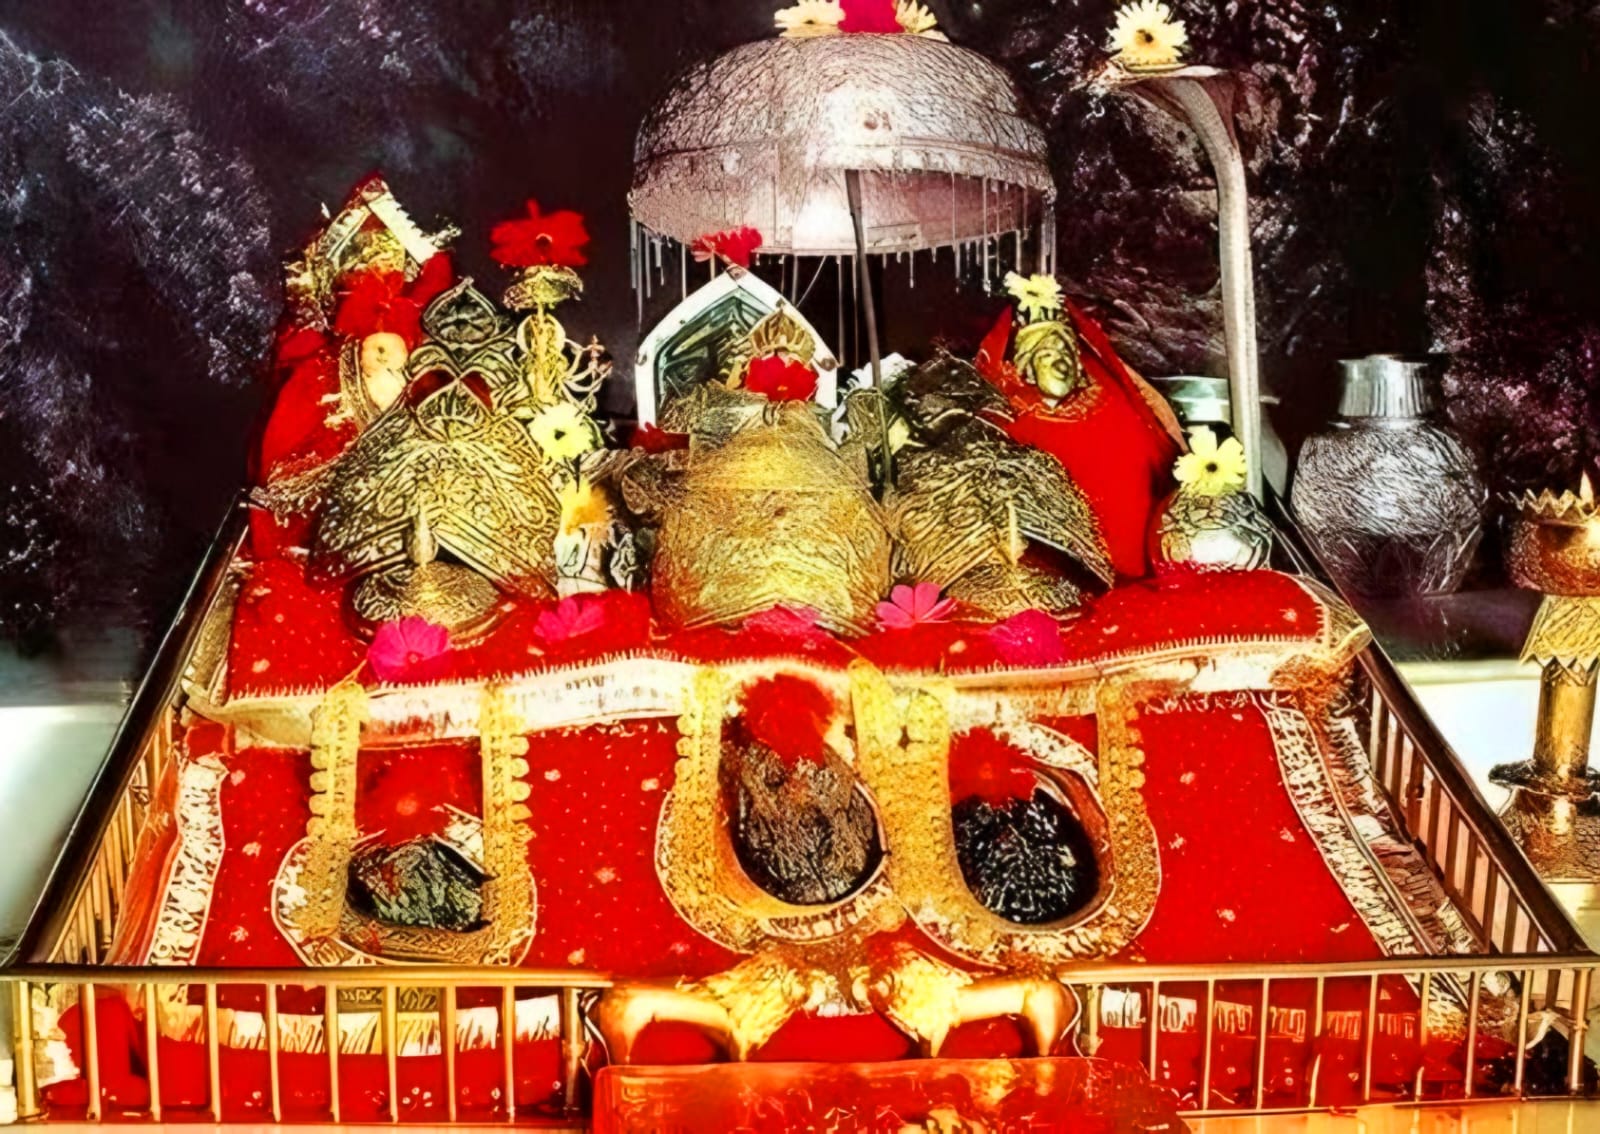 वैष्णो देवी मंदिर इंदौर फ़ोटो | वैष्णो देवी मंदिर के अन्दर की फोटो | vaishno devi mandir indore photos